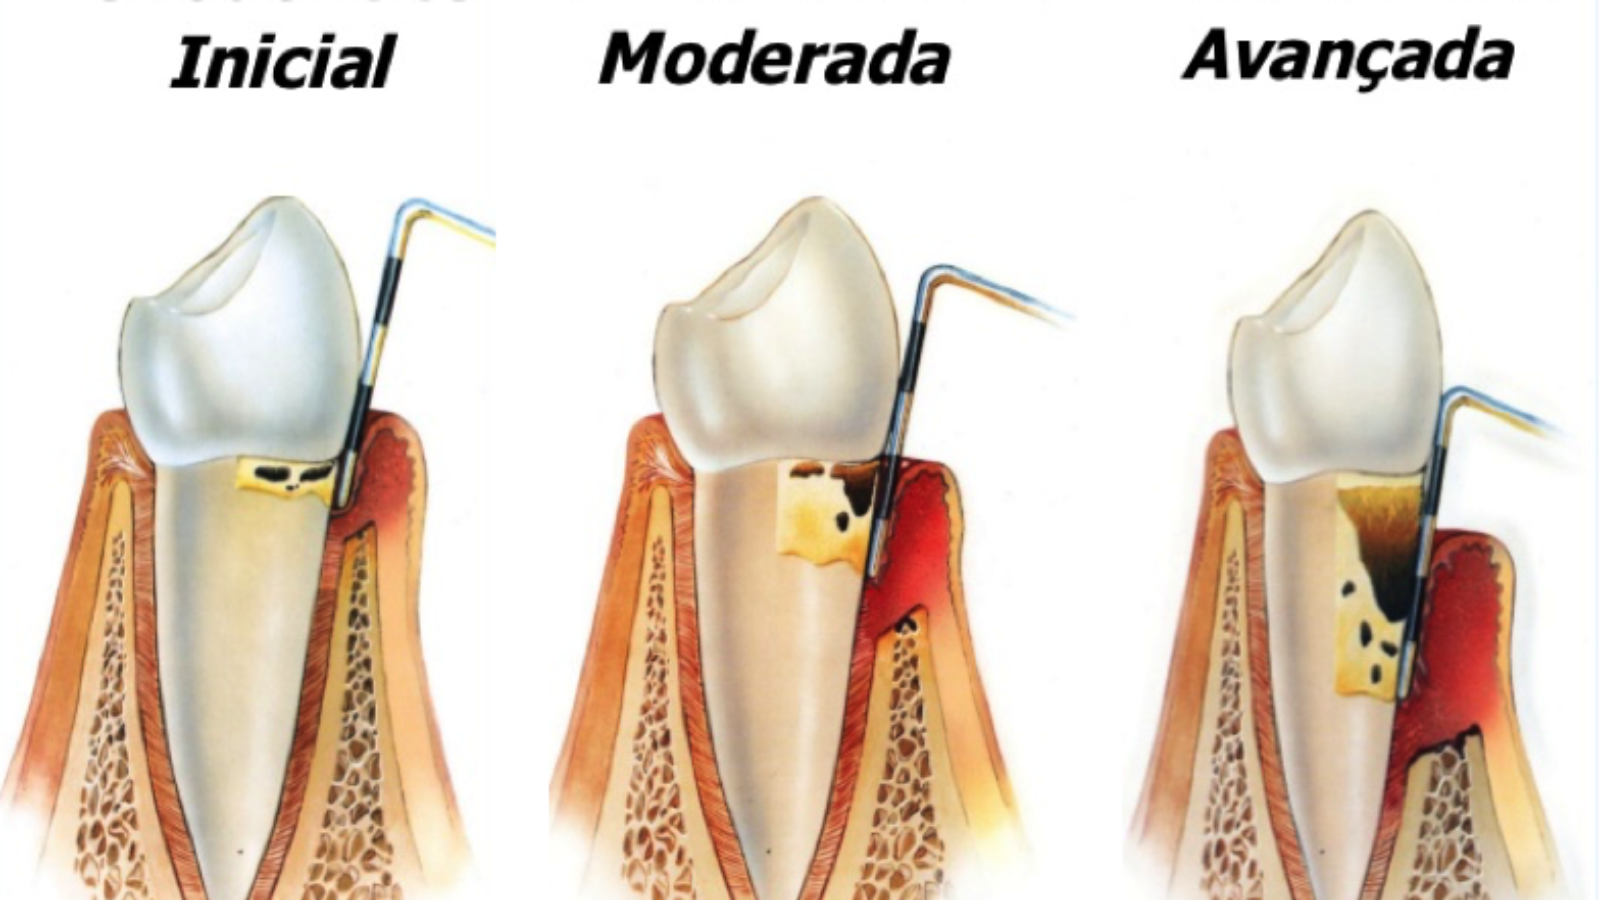 Periodontite pode levar à perda do dente